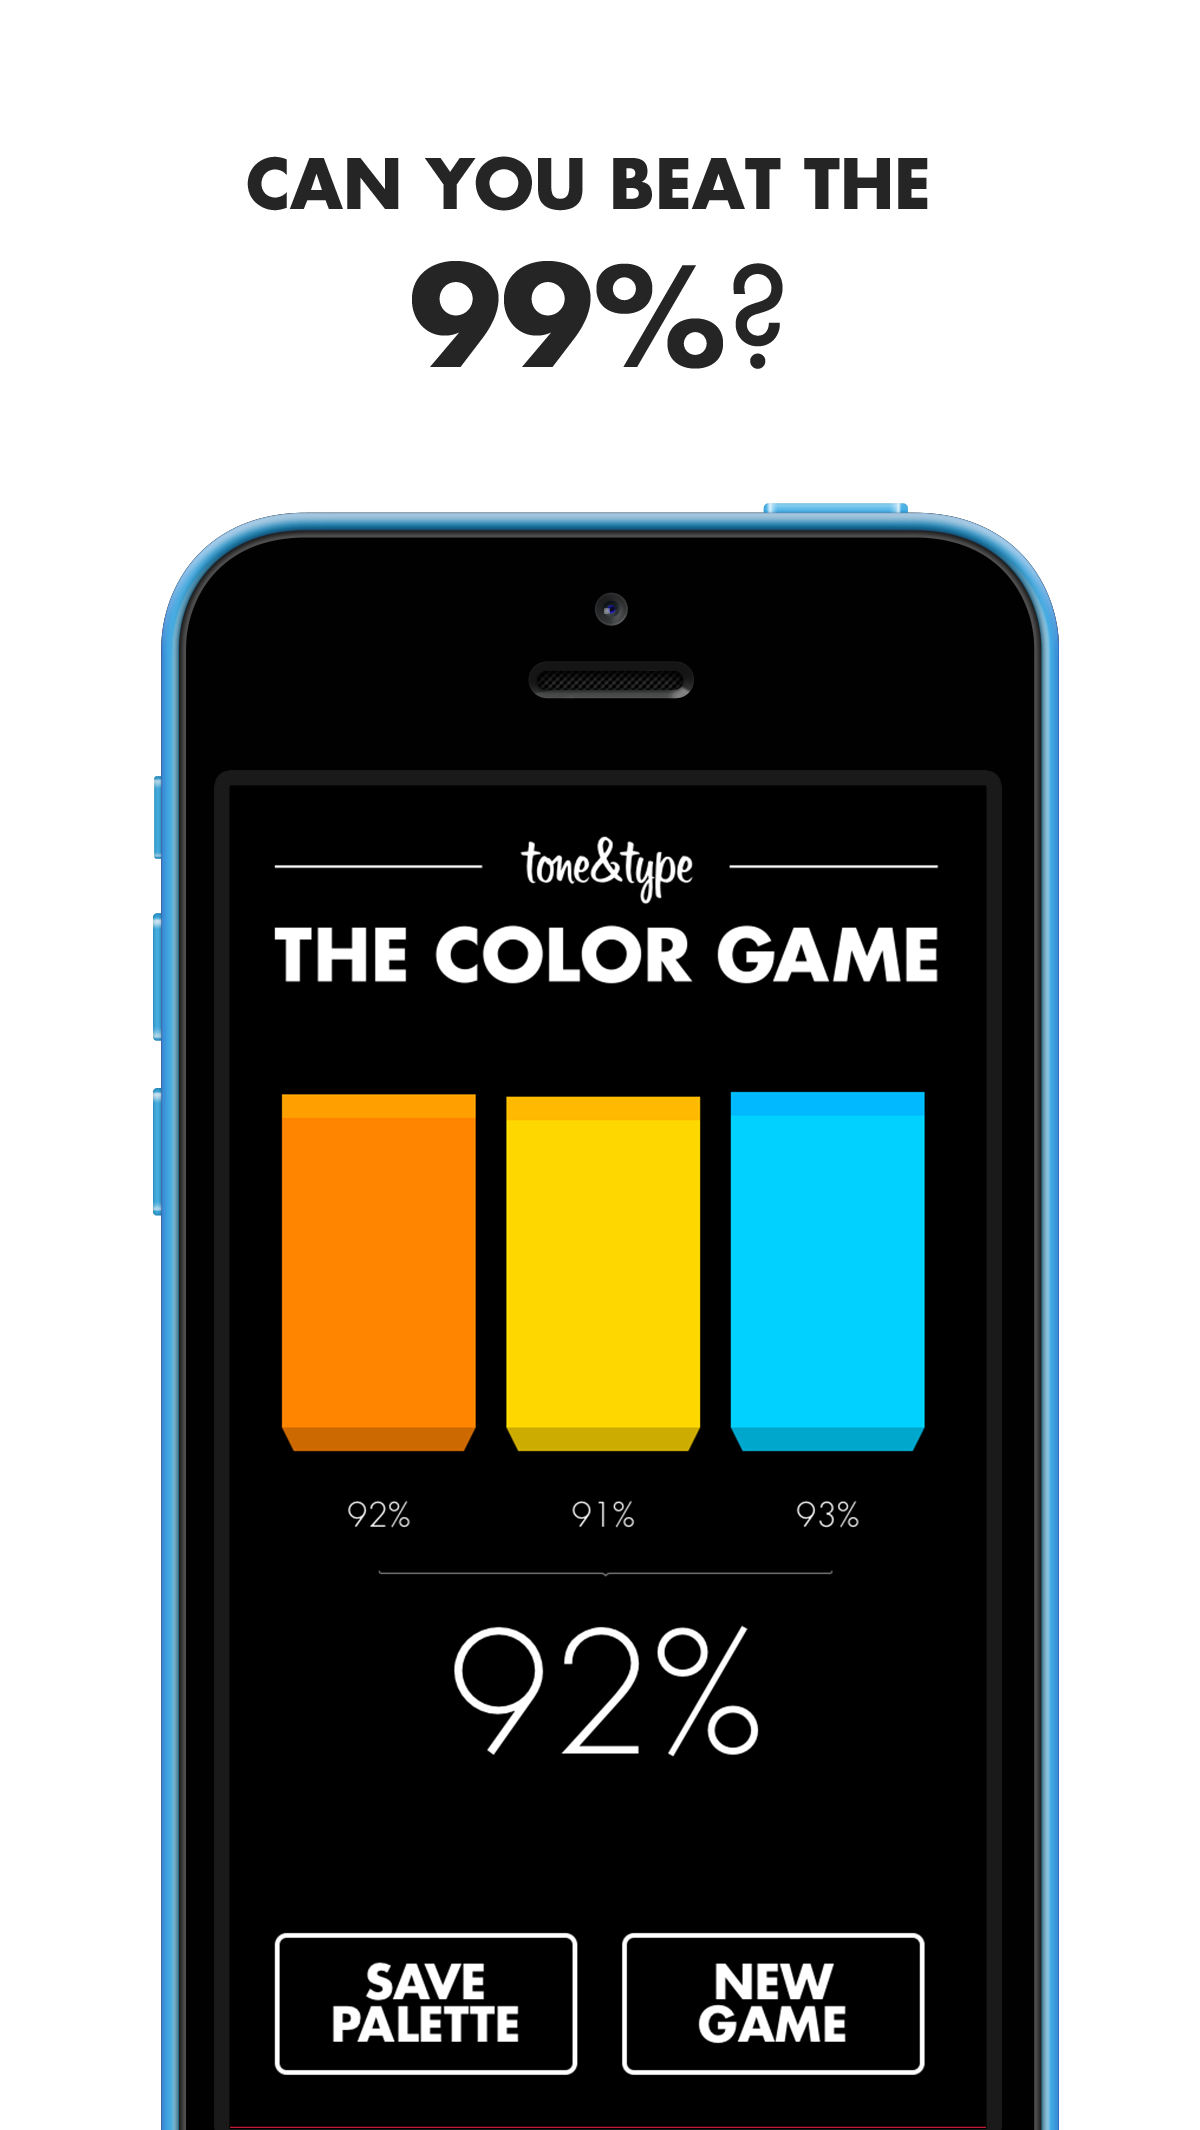 color color game game app ios ios7 iOS 7 retina iPad iphone iphone 5c mobile app design UI ux